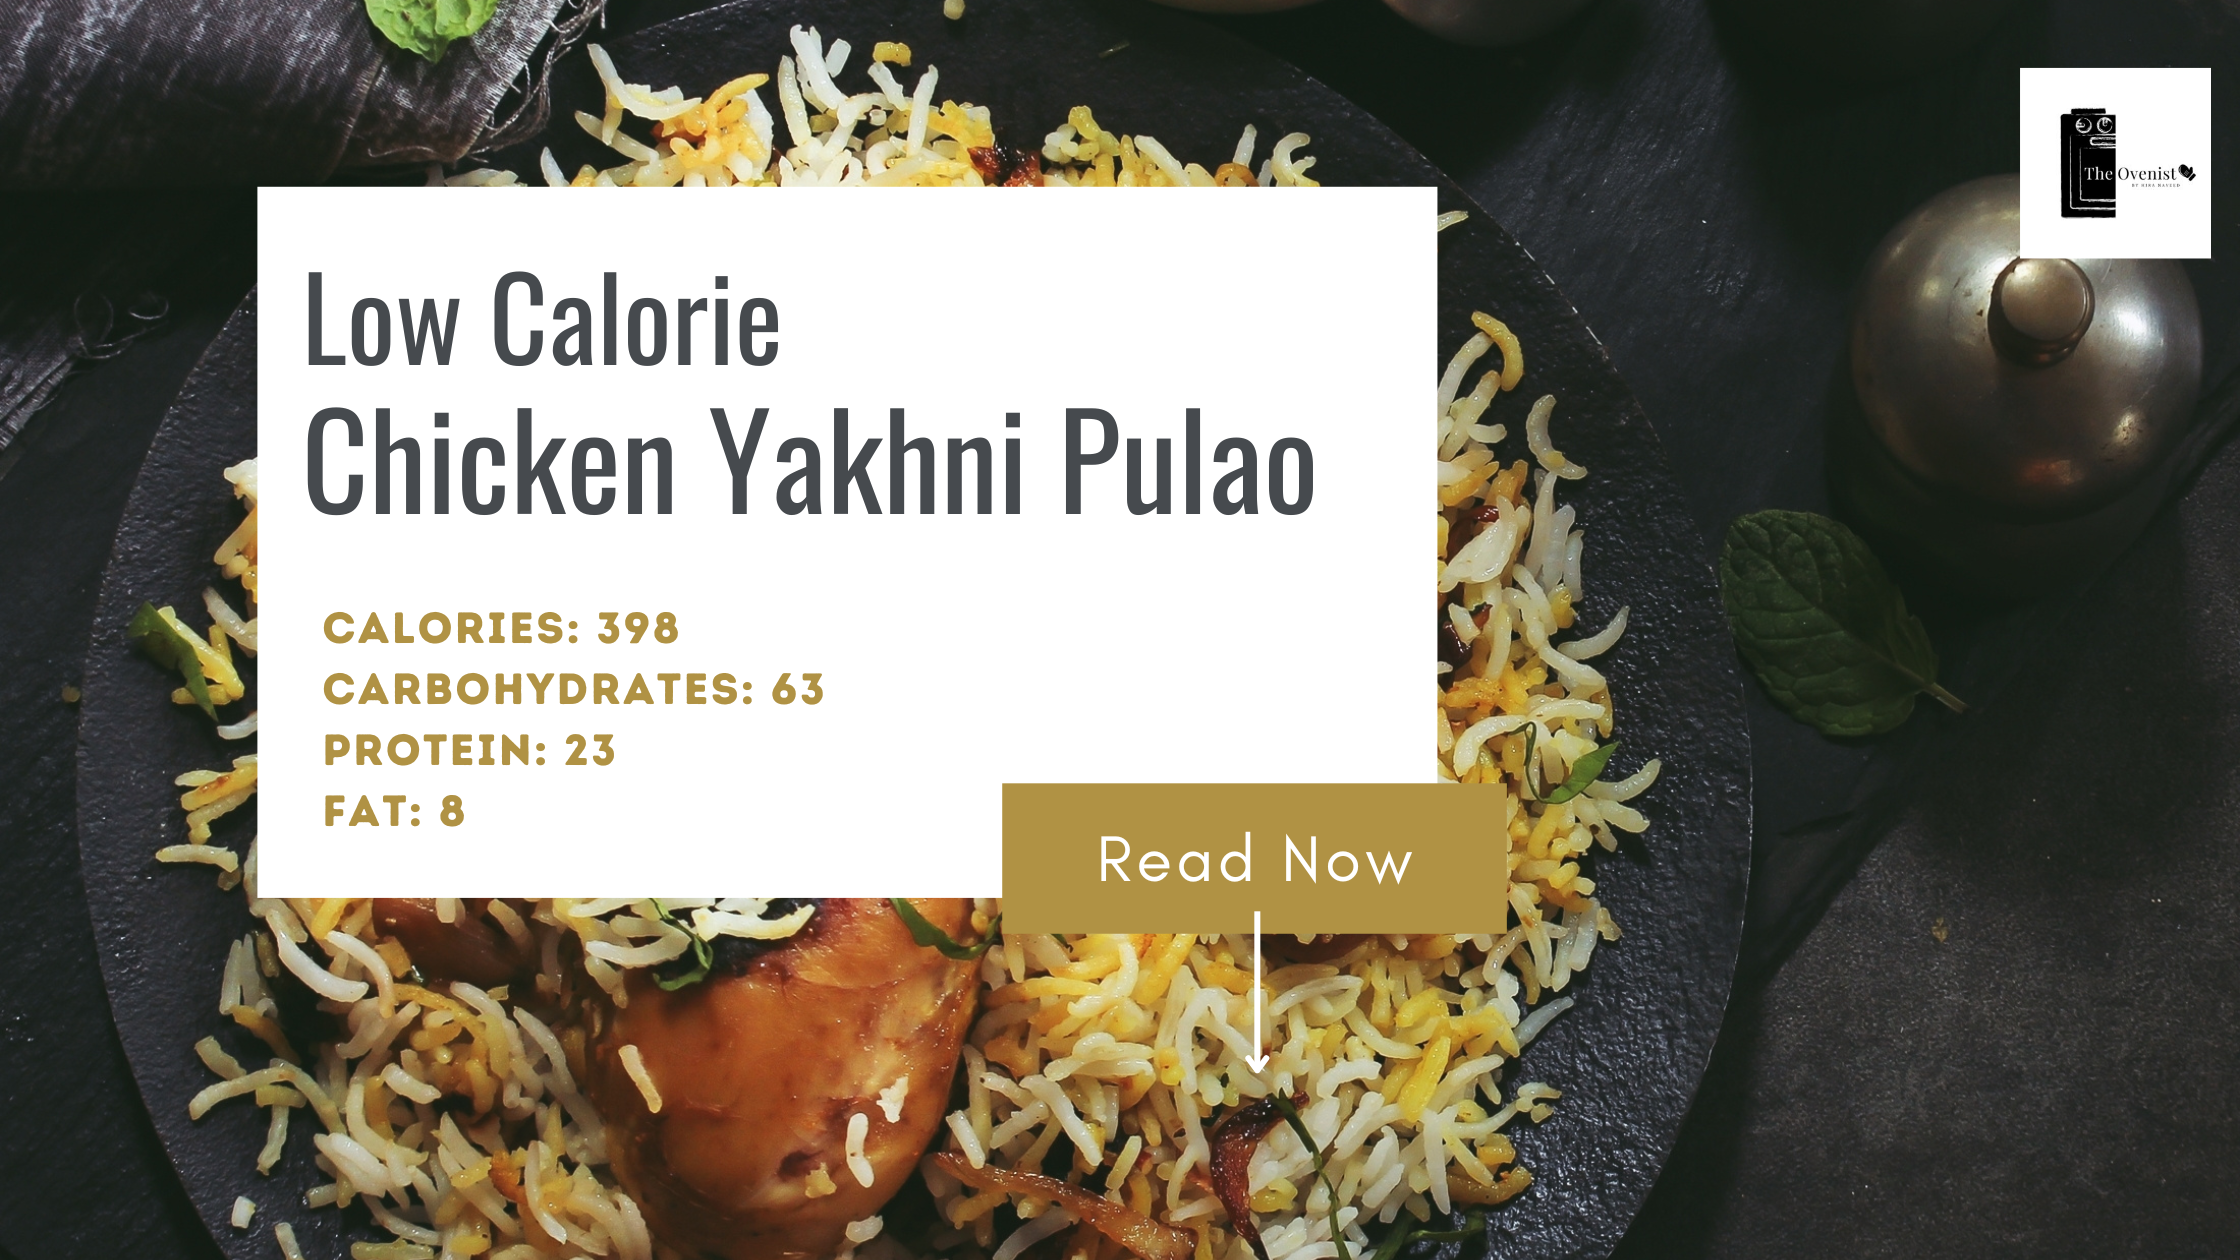 Low Calorie Chicken Yakhni Pulao